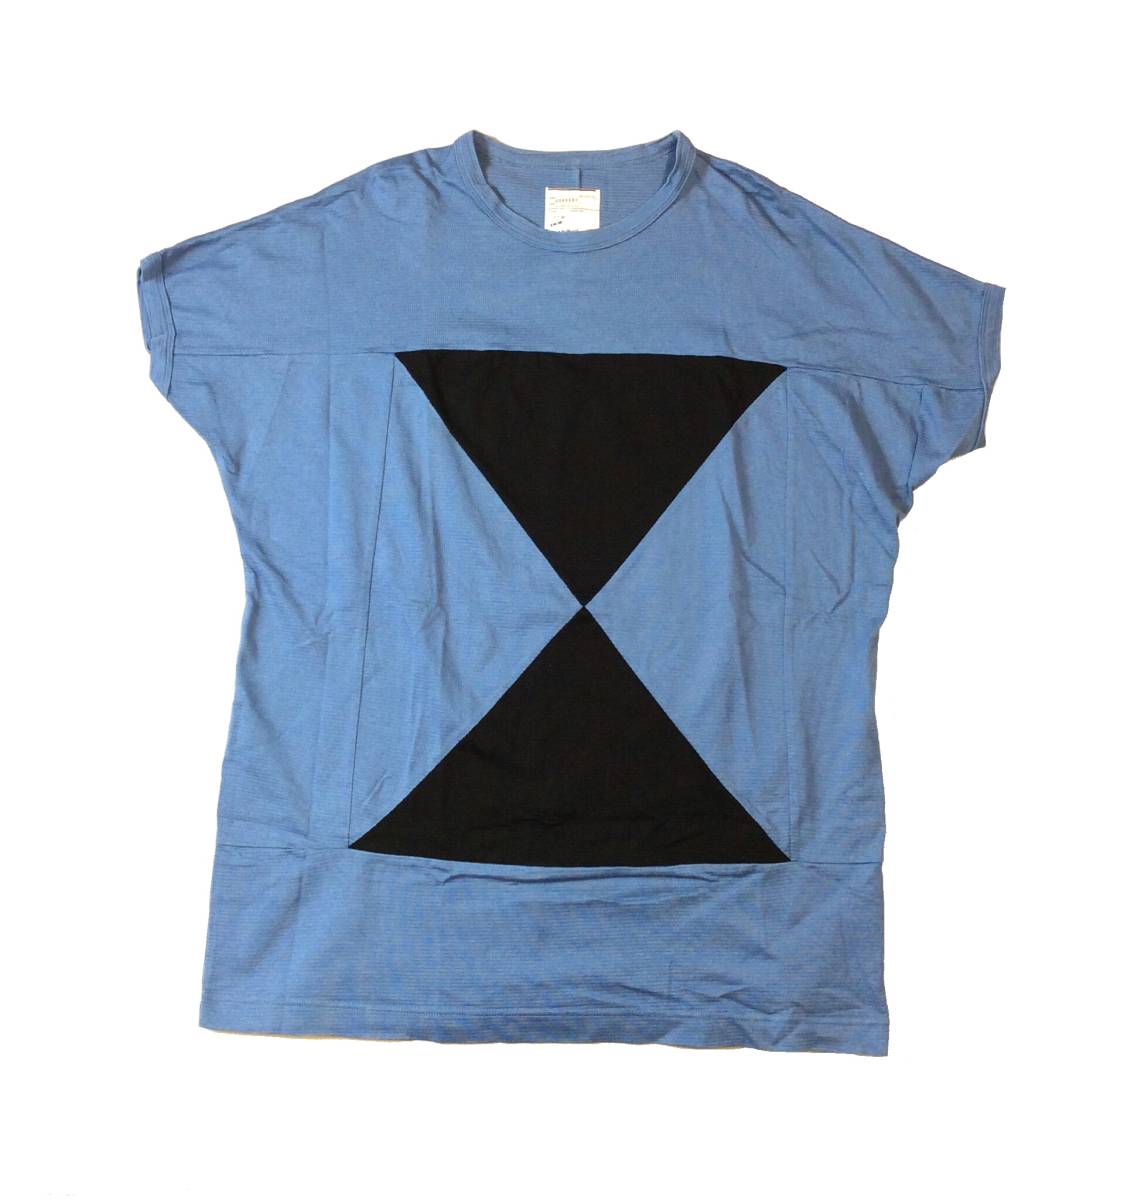 SHAREEF シャリーフ デザイントップス Tシャツ ドルマンスリーブ ブルー/ブラック レーヨン コットン メンズ 1_画像1